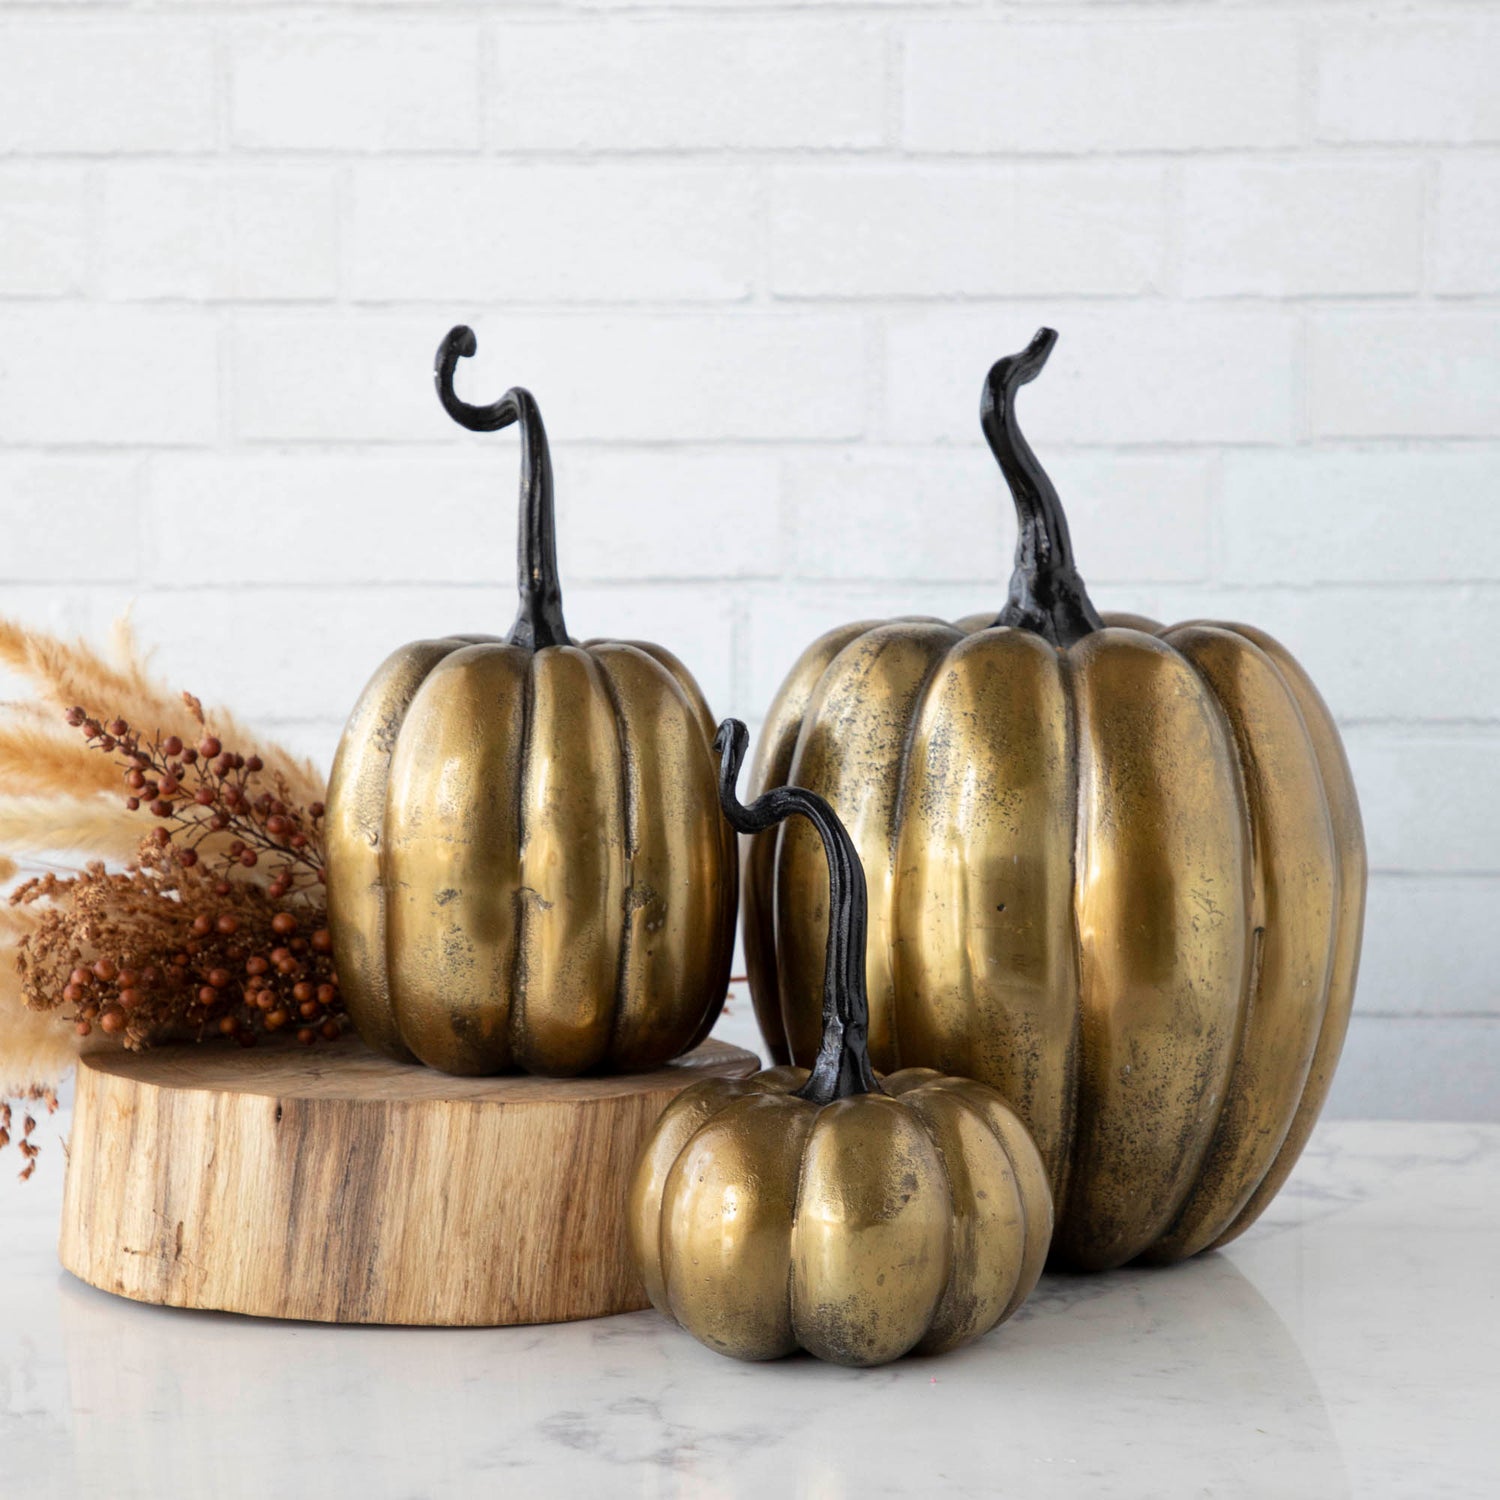 Three handmade Accent Decor brass pumpkins on a wooden table.